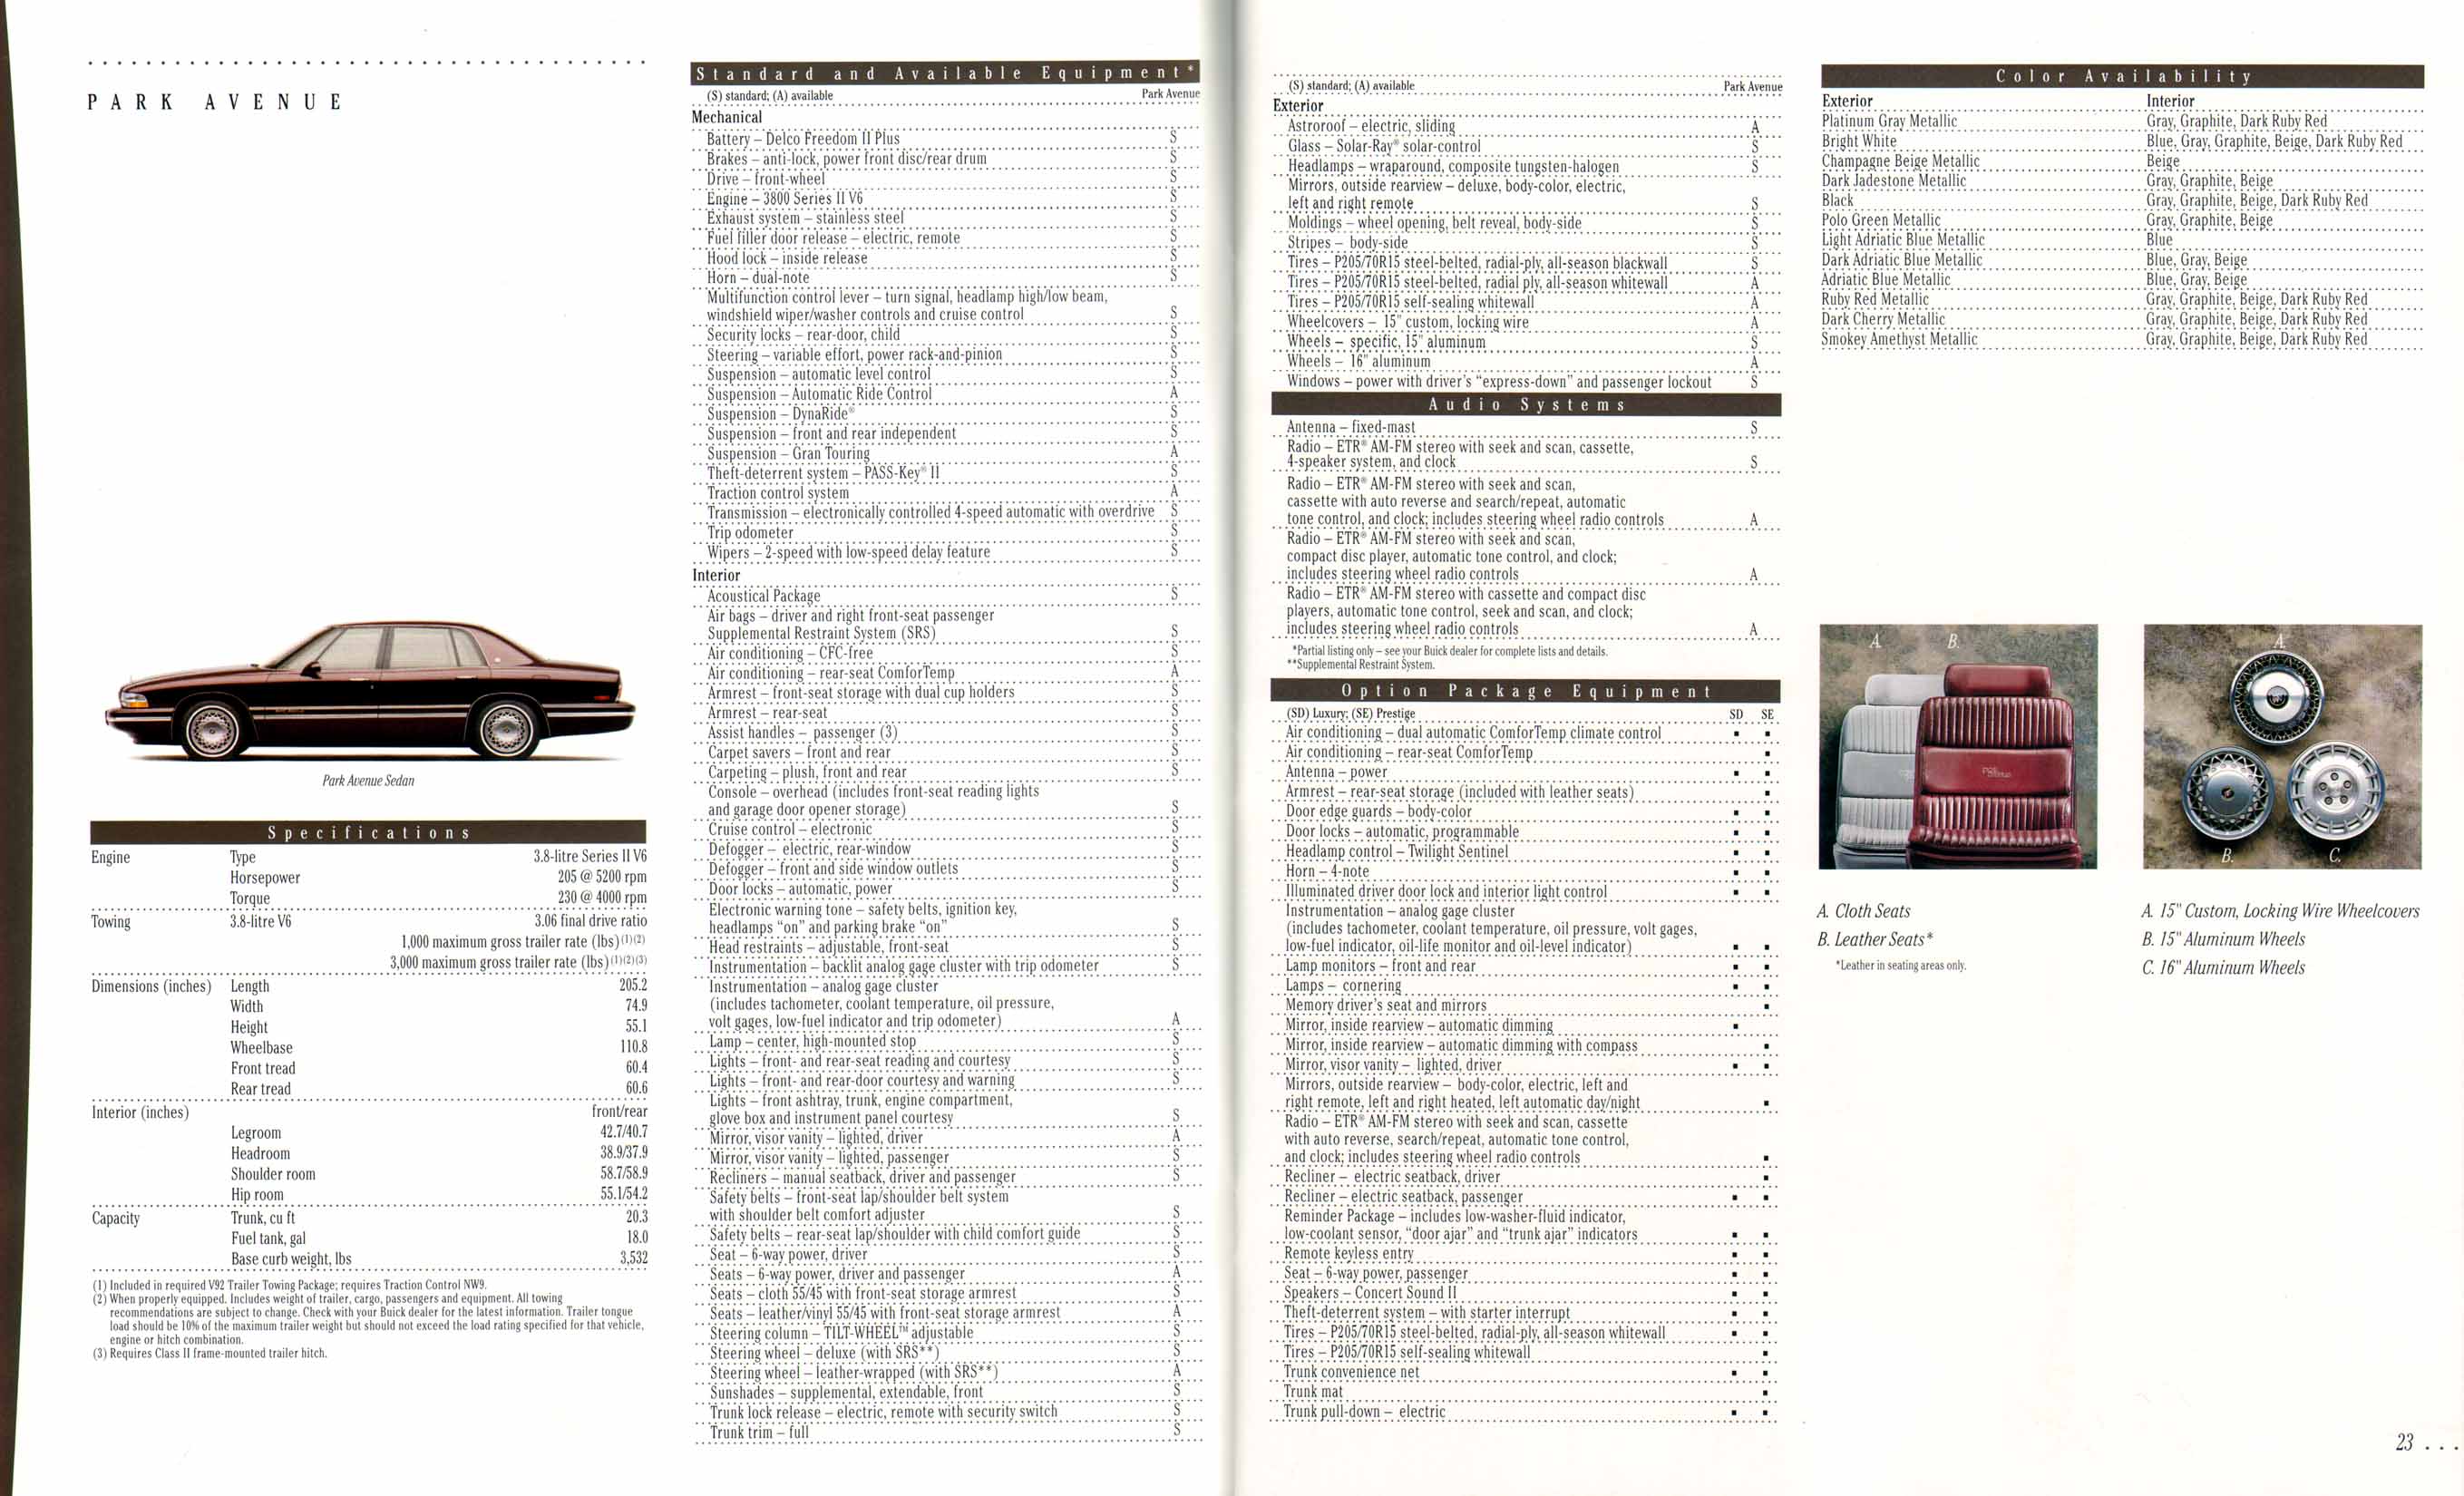 1995 Buick Full Line Prestige-22-23